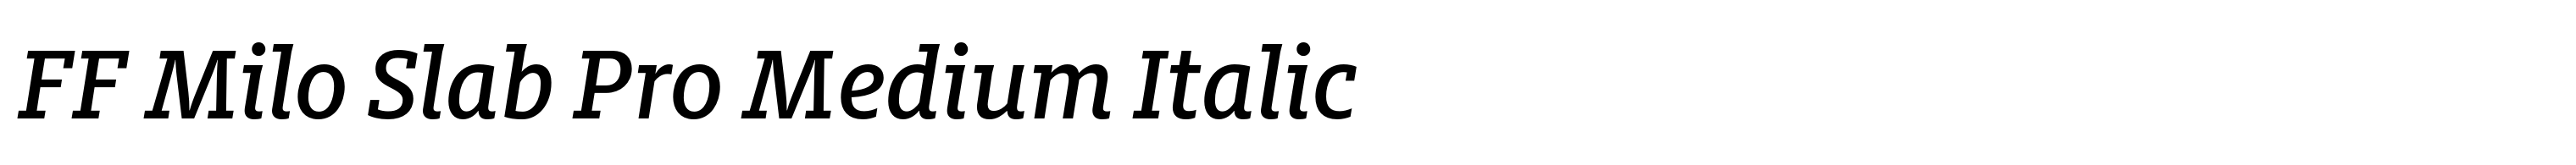 FF Milo Slab Pro Medium Italic